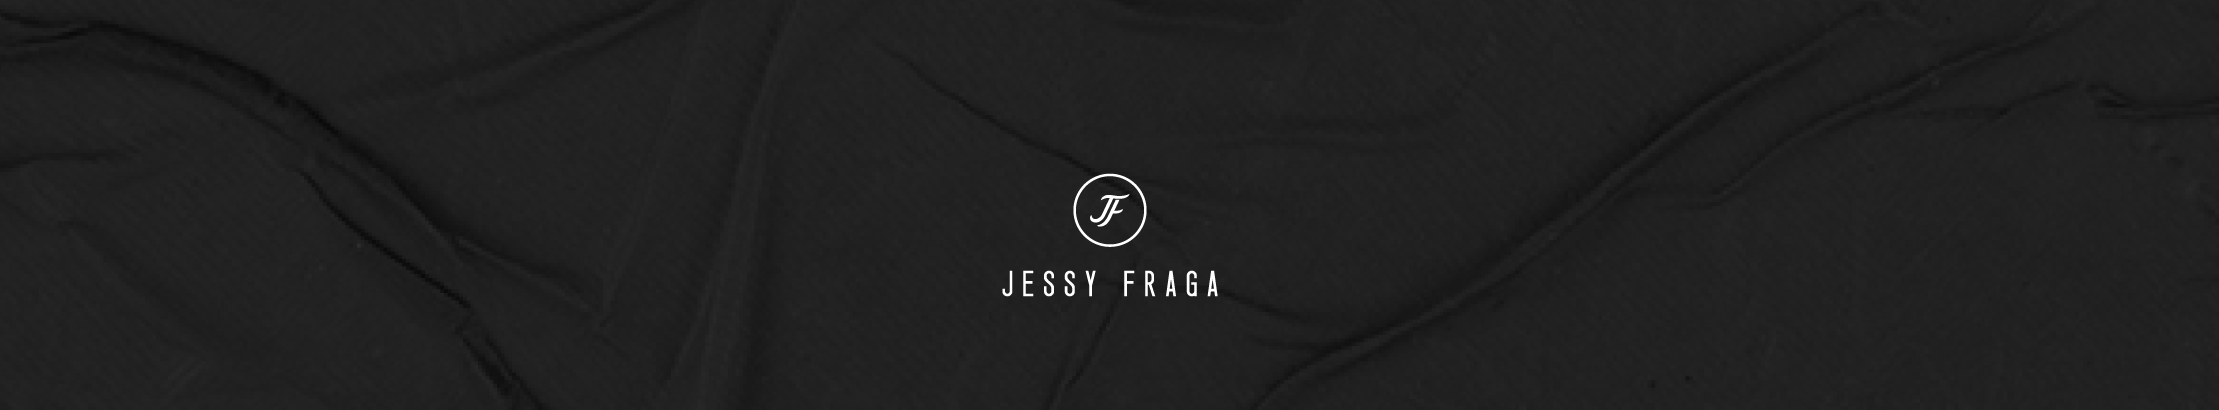 Bannière de profil de Jessy Fraga